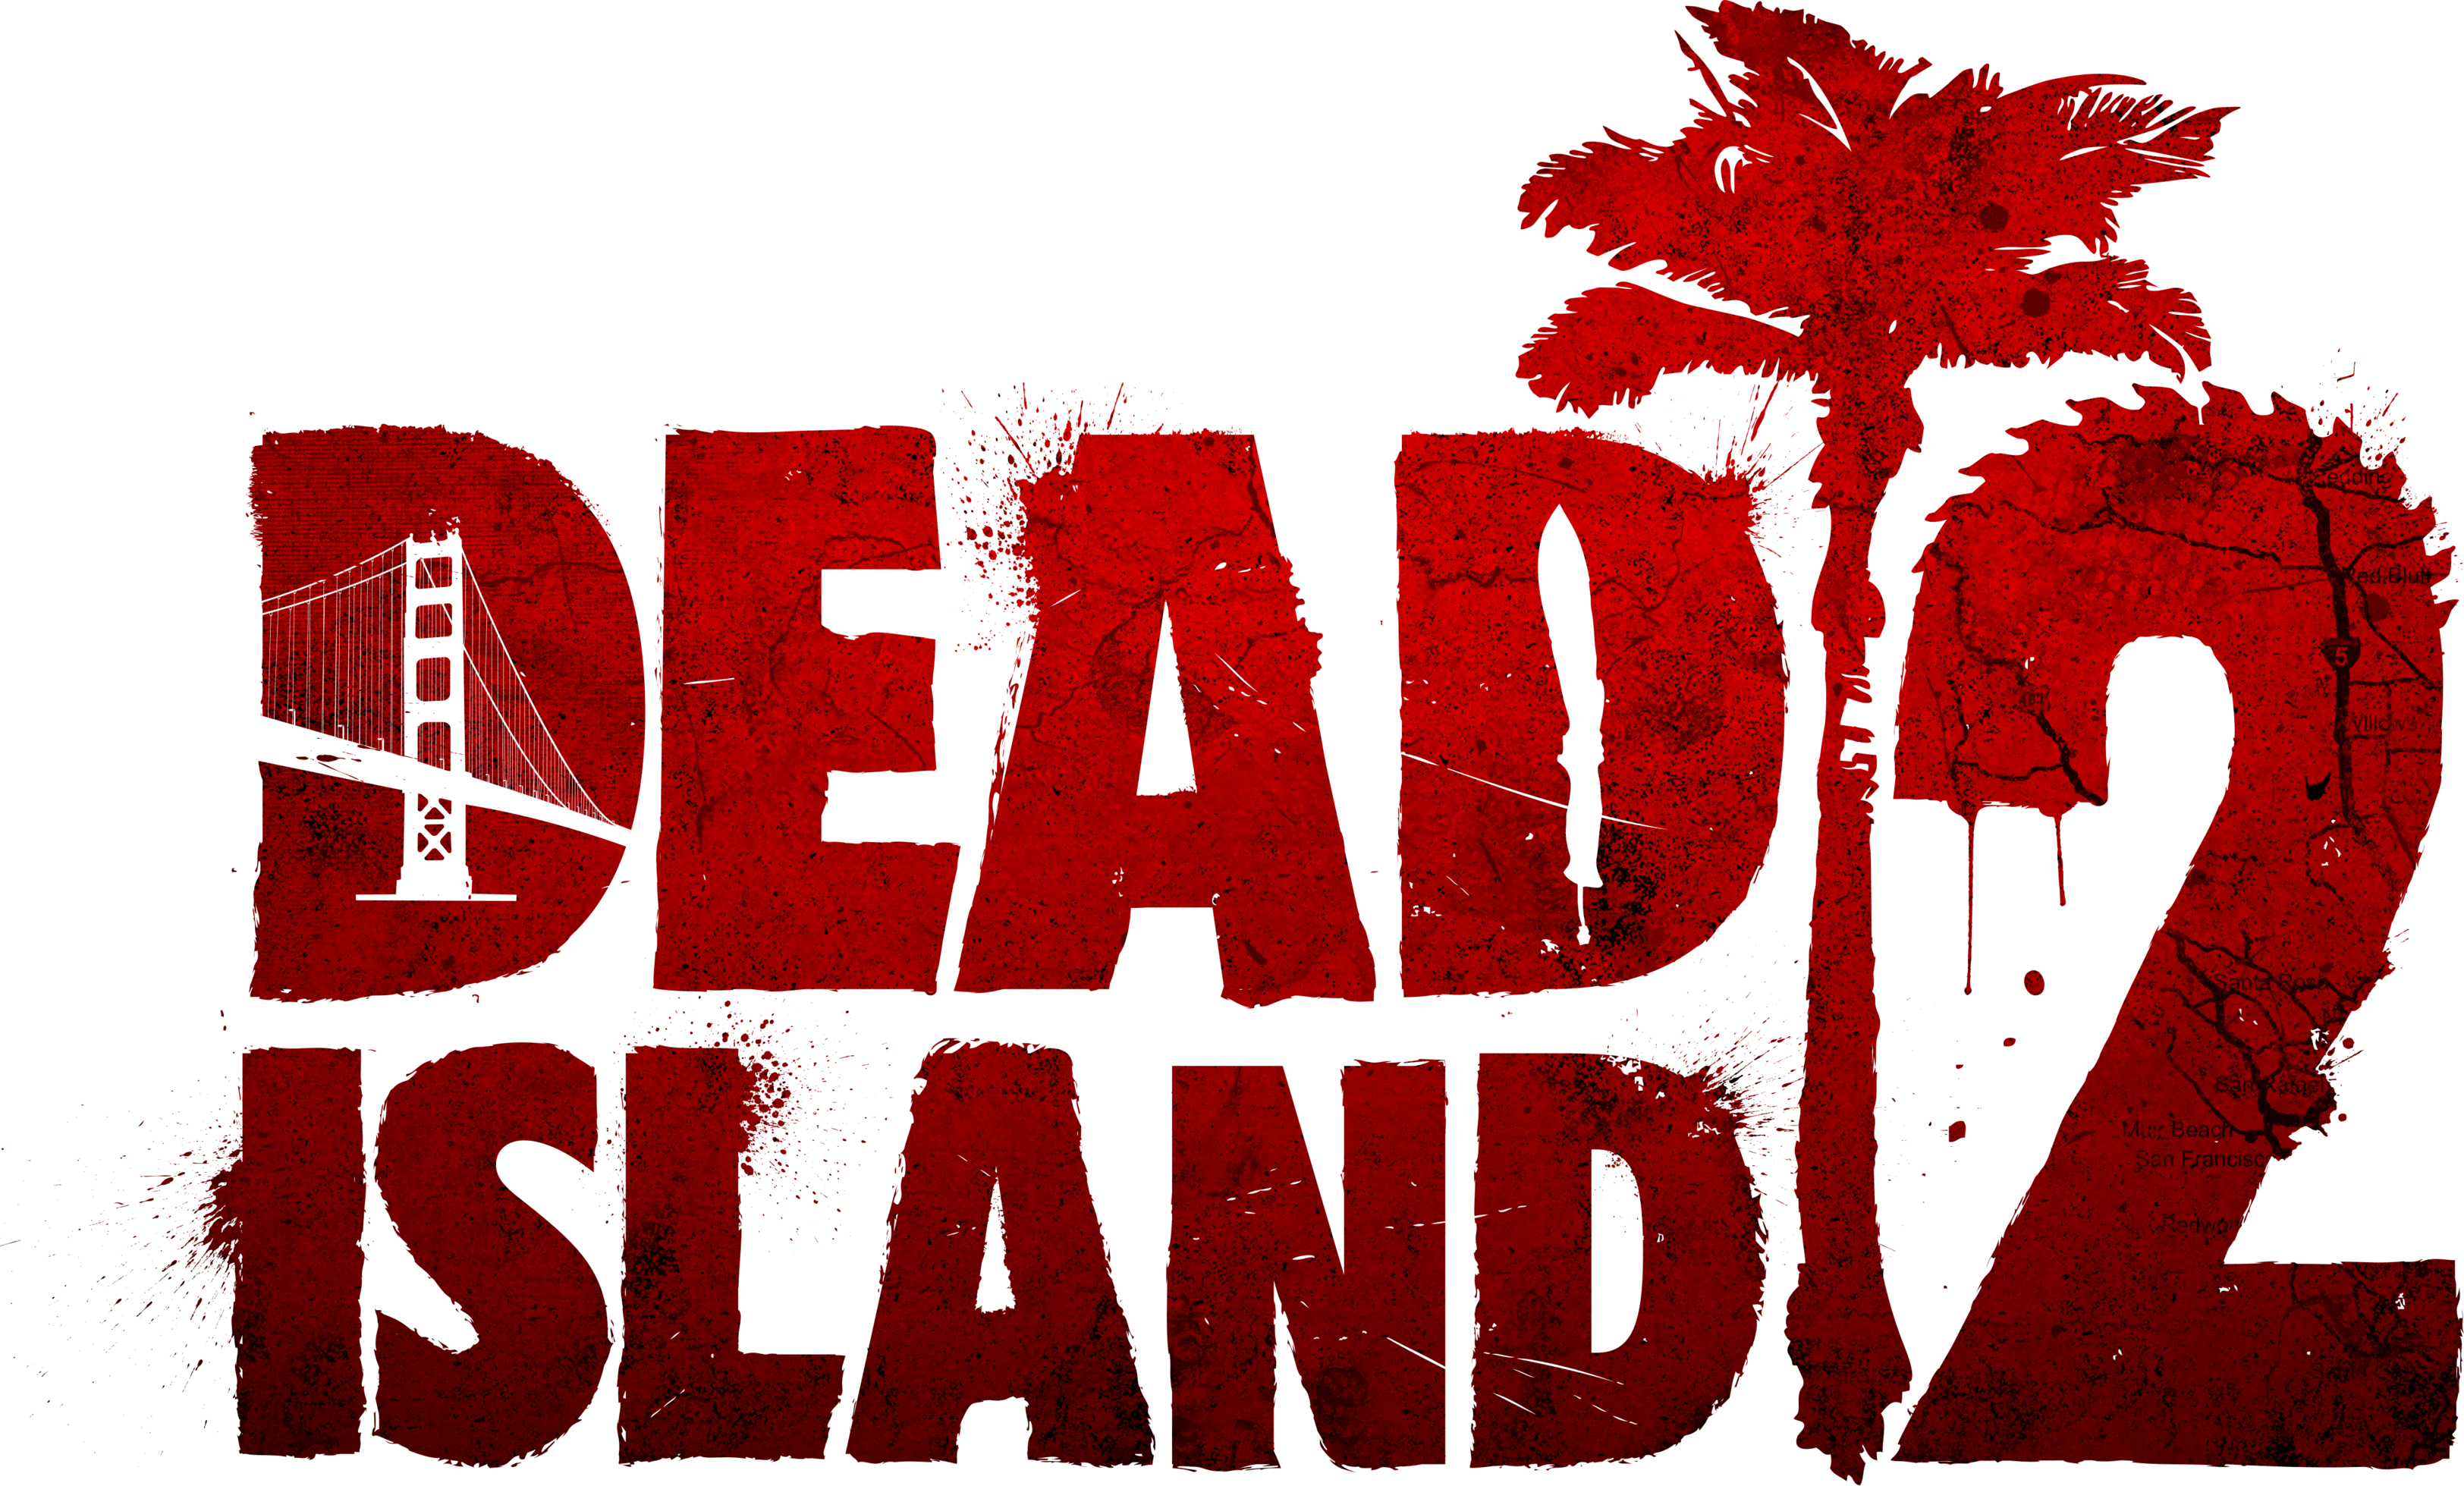 Dead Island 2 - SteamGridDB